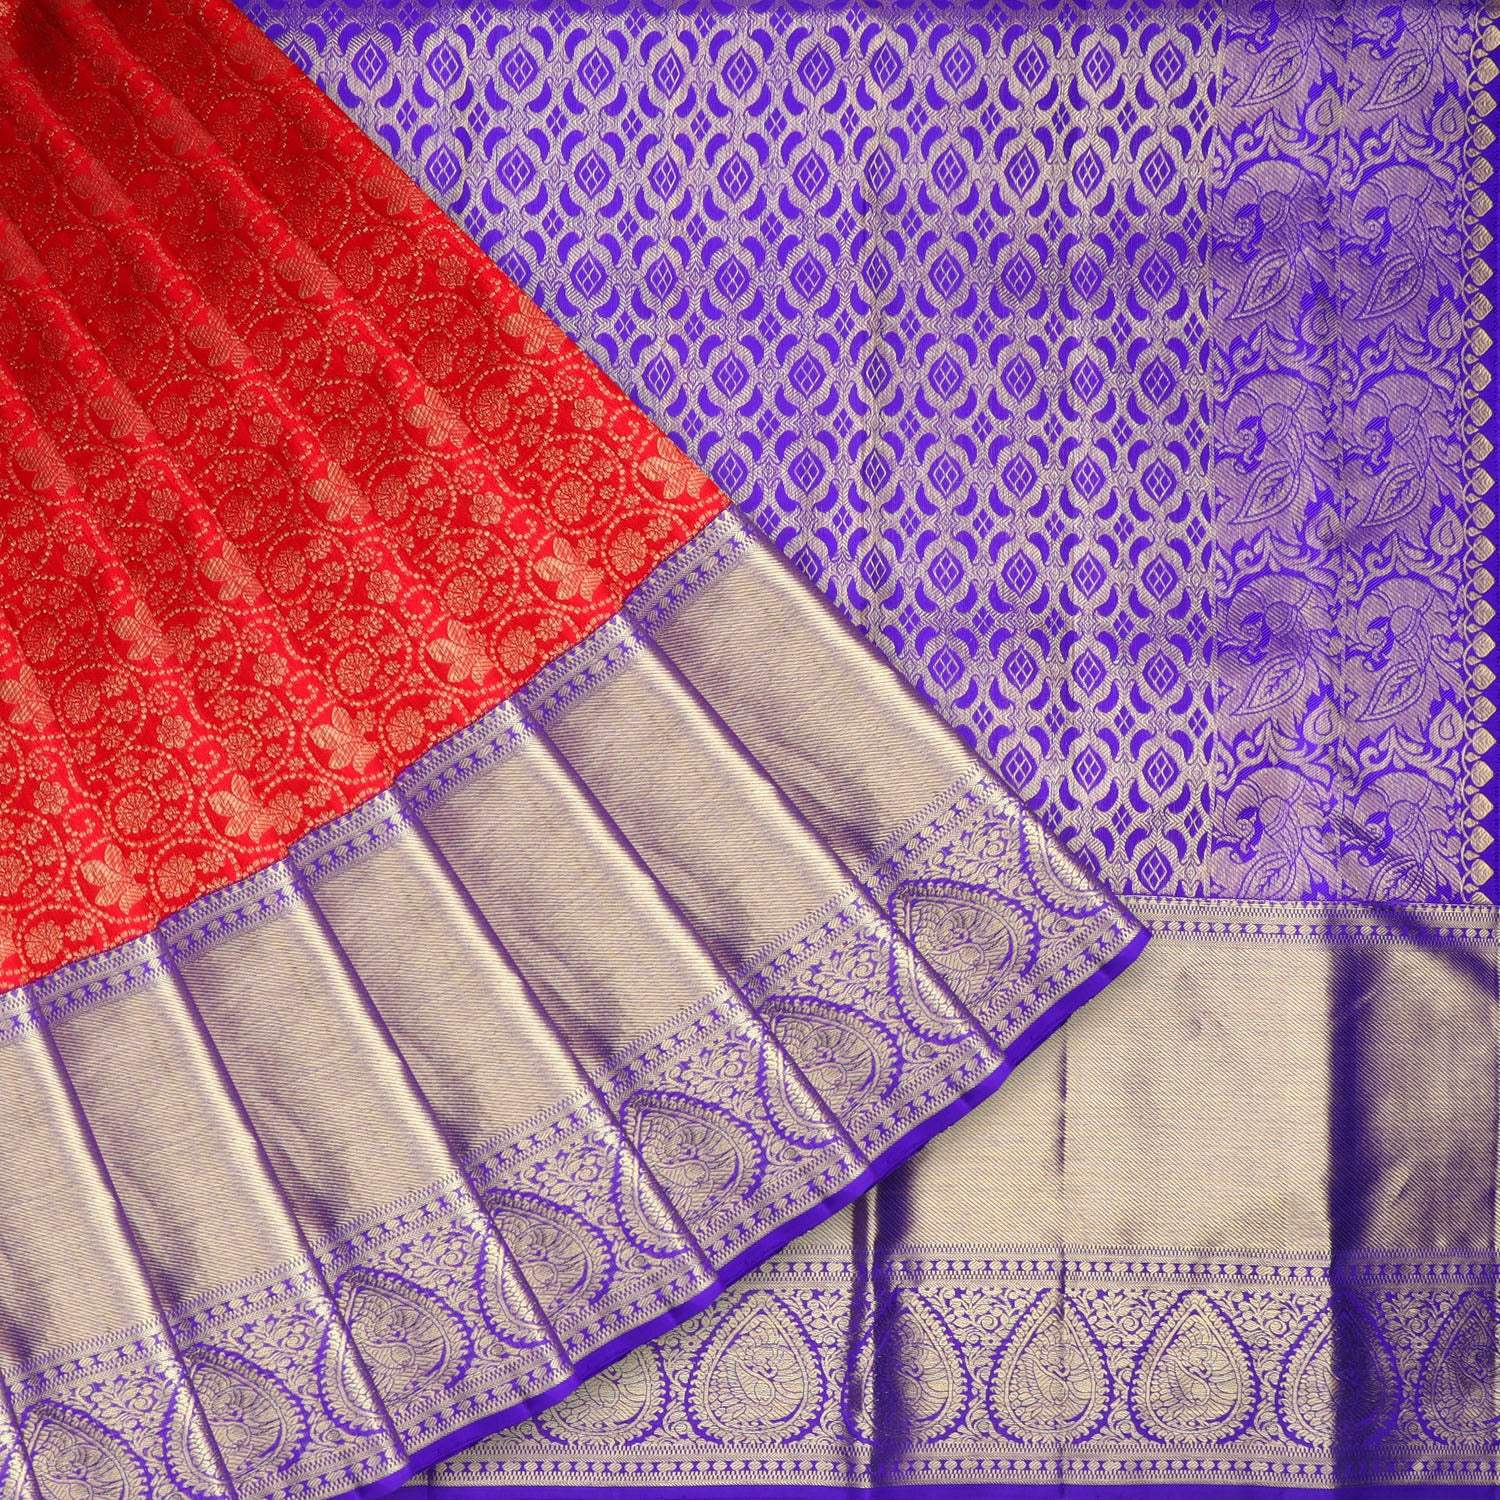 Scarlet Red Kanjivaram Silk Saree With Jaal Work Pattern - Singhania's